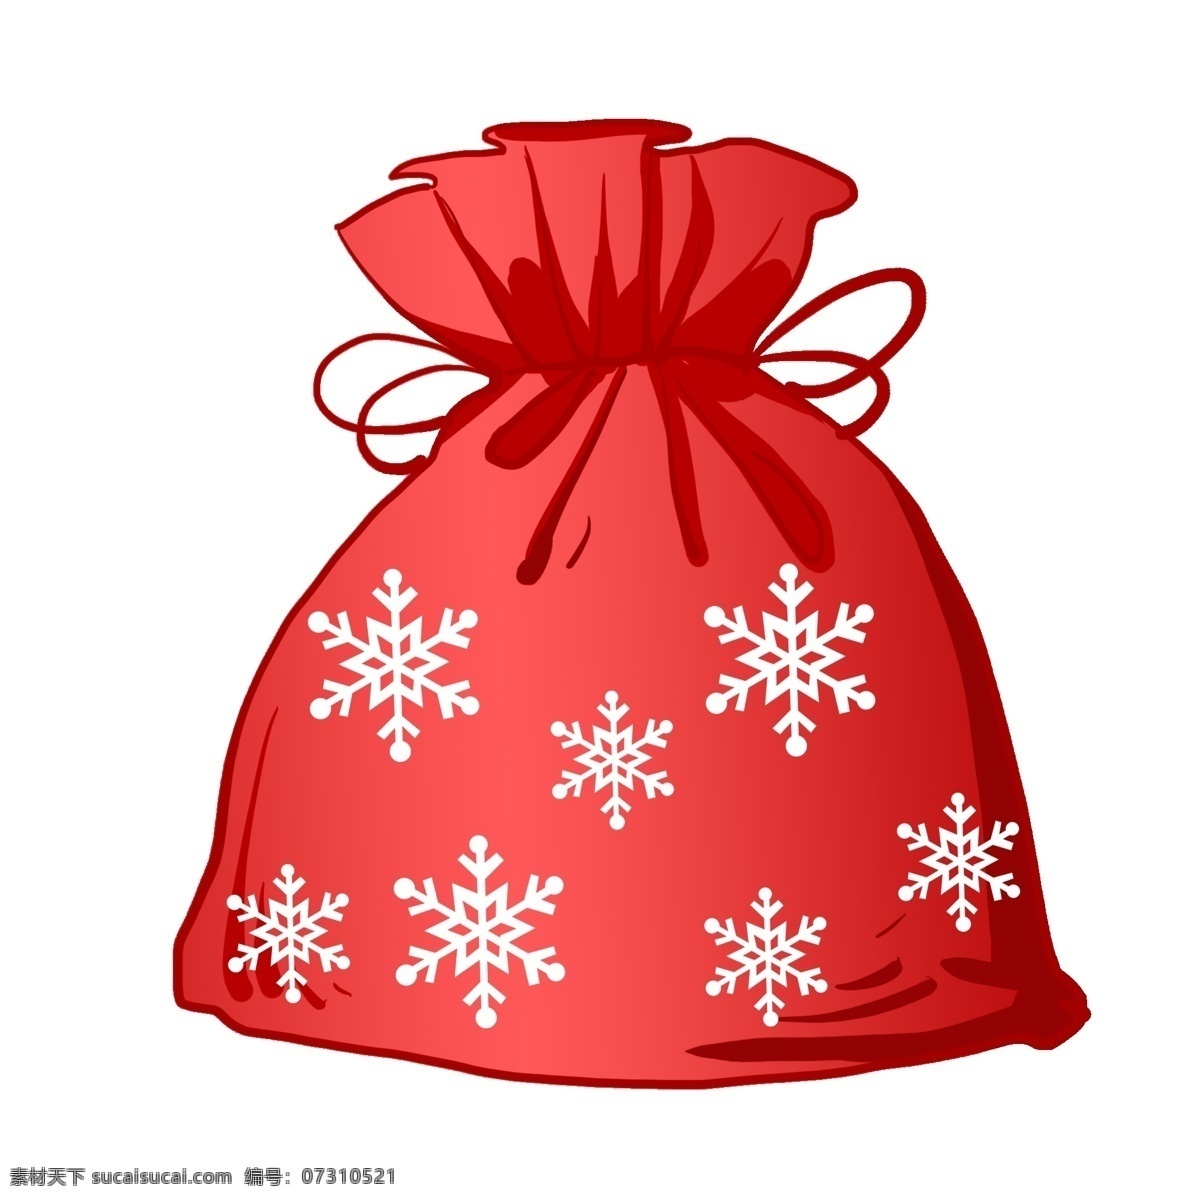 红色 圣诞 礼物 袋 插画 圣诞节礼物袋 冬季 冬天 圣诞节礼物 扎 口 印 雪花 片